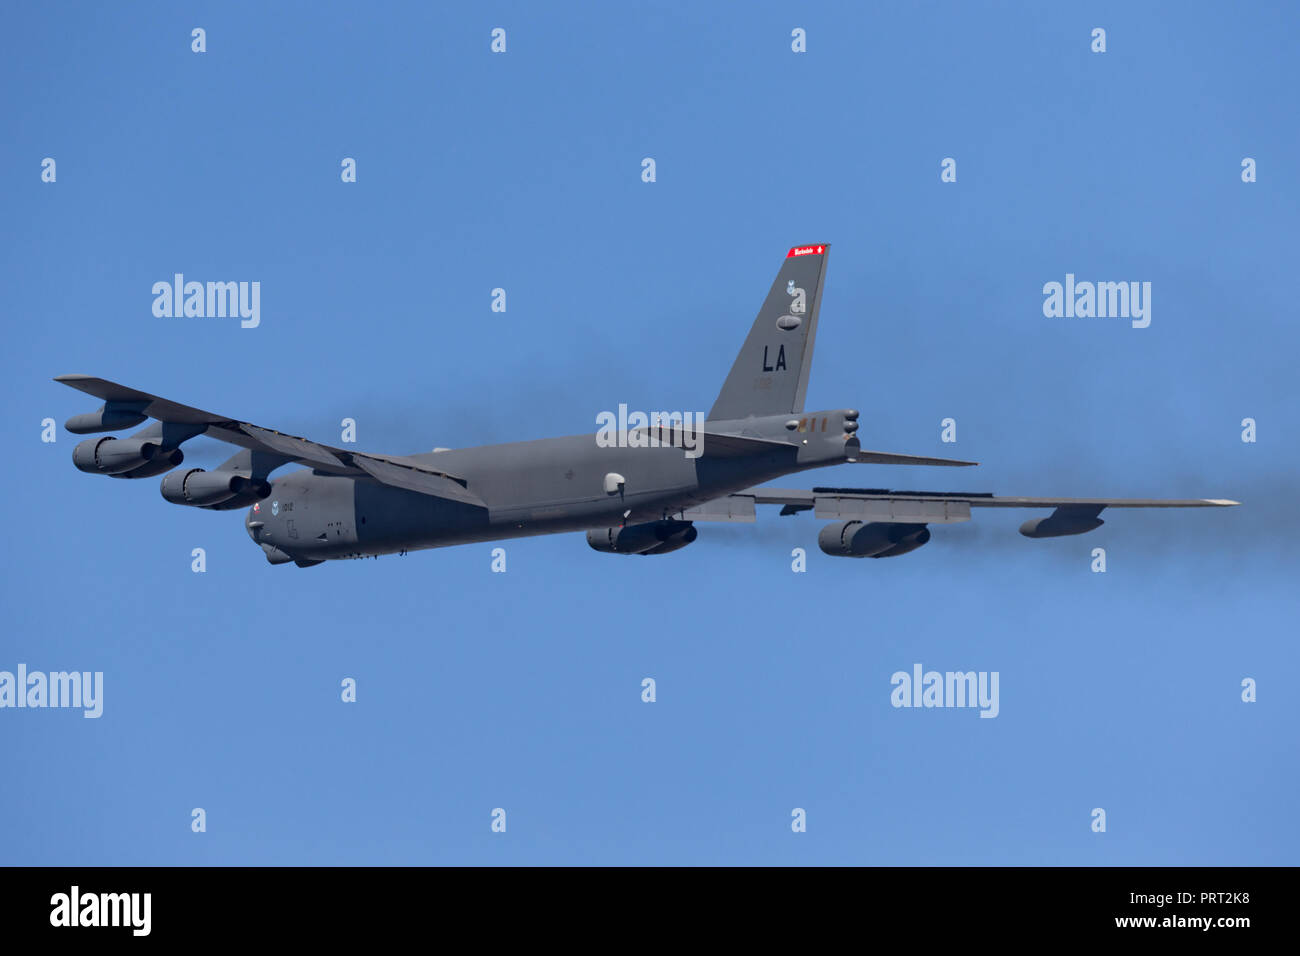 La Fuerza Aérea de los Estados Unidos (USAF) Boeing B-52H Stratofortress bombardero estratégico (61-0012) desde la base de la Fuerza Aérea Barksdale. Foto de stock